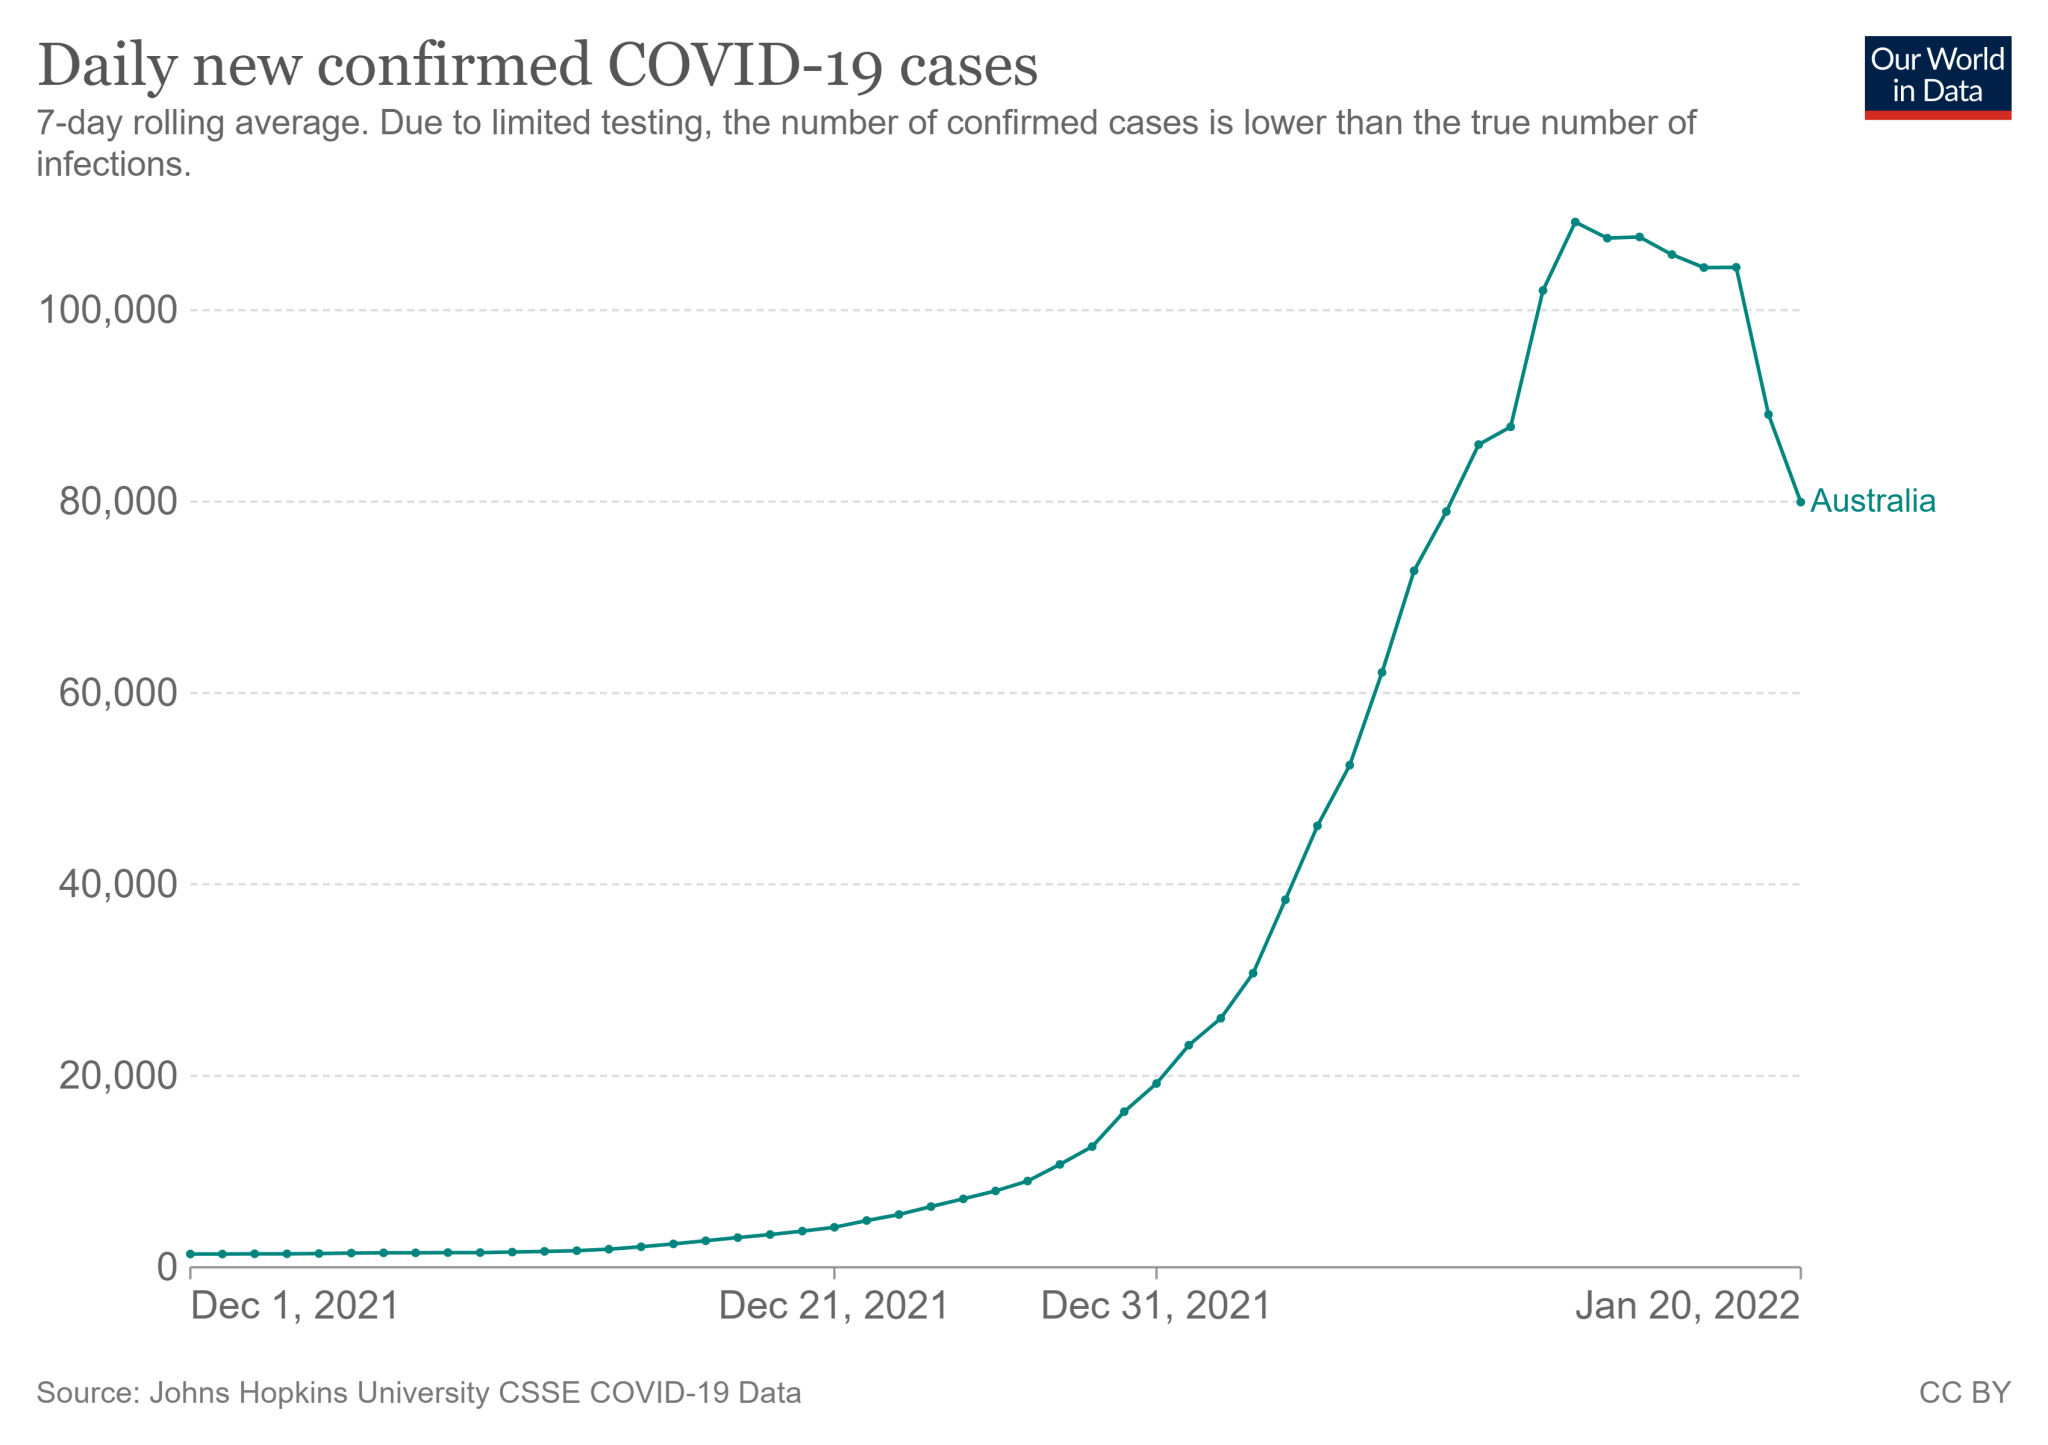 Średnia siedmiodniowa zakażeń COVID-19 w Australii od 1 grudnia 2021 roku do 20 stycznia 2022 roku